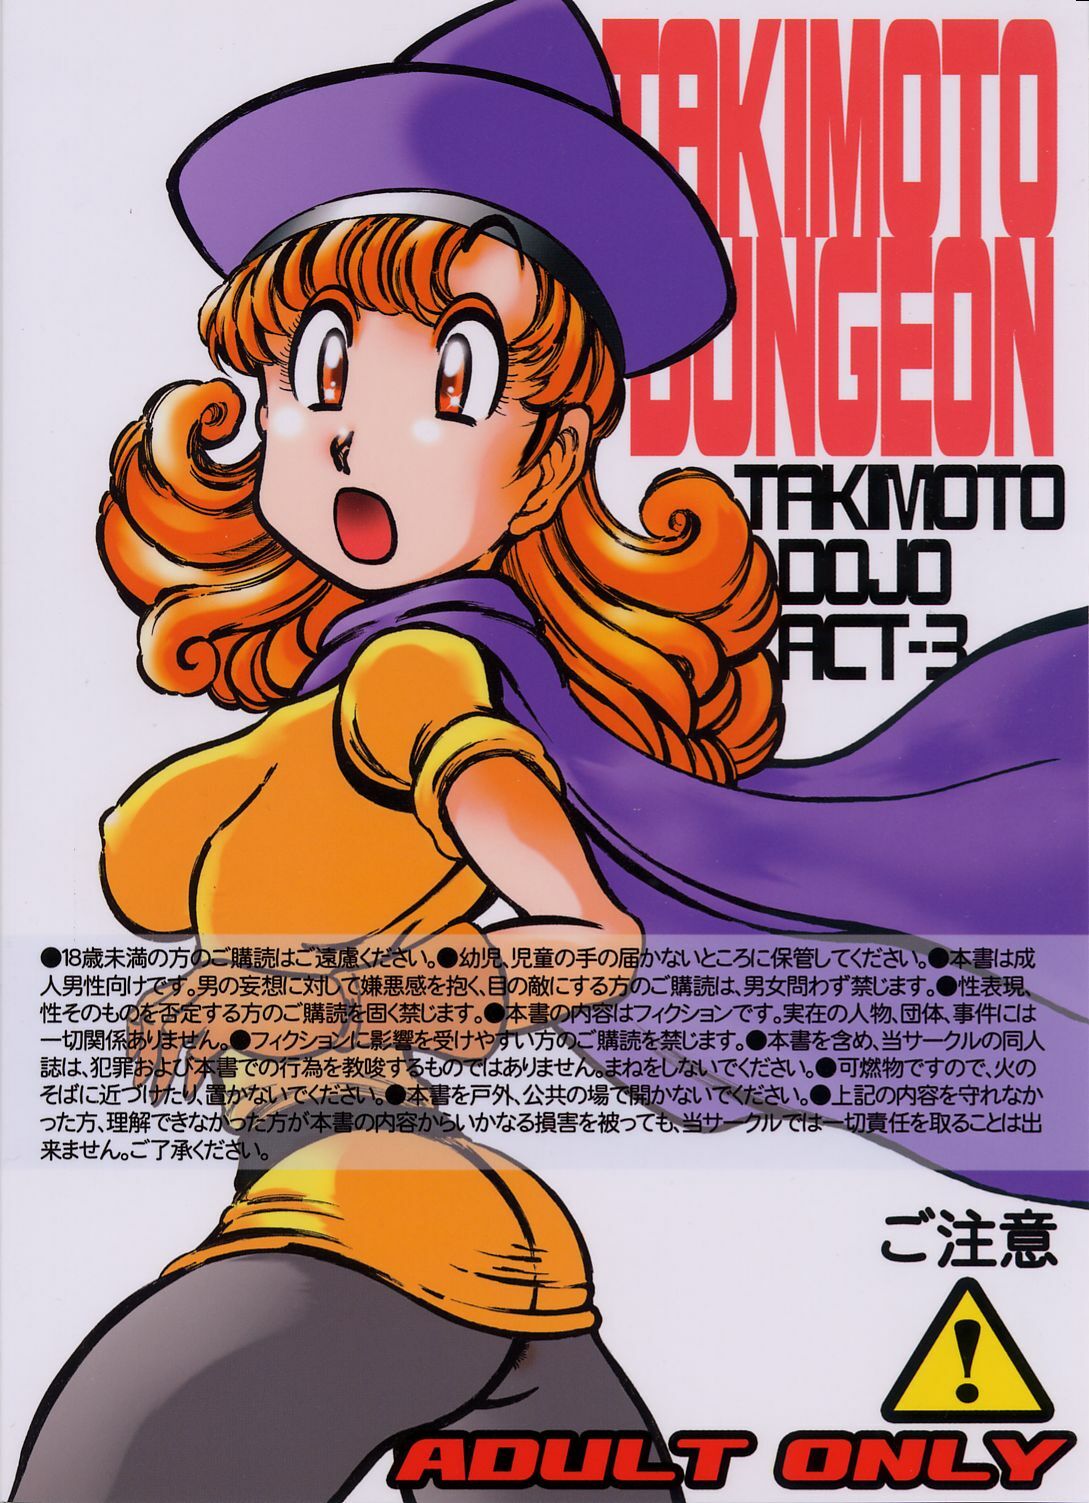 (SC18) [Takimoto Doujou (Kyuusho Tarou)] Takimoto Dungeon (Dragon Quest IV) page 34 full